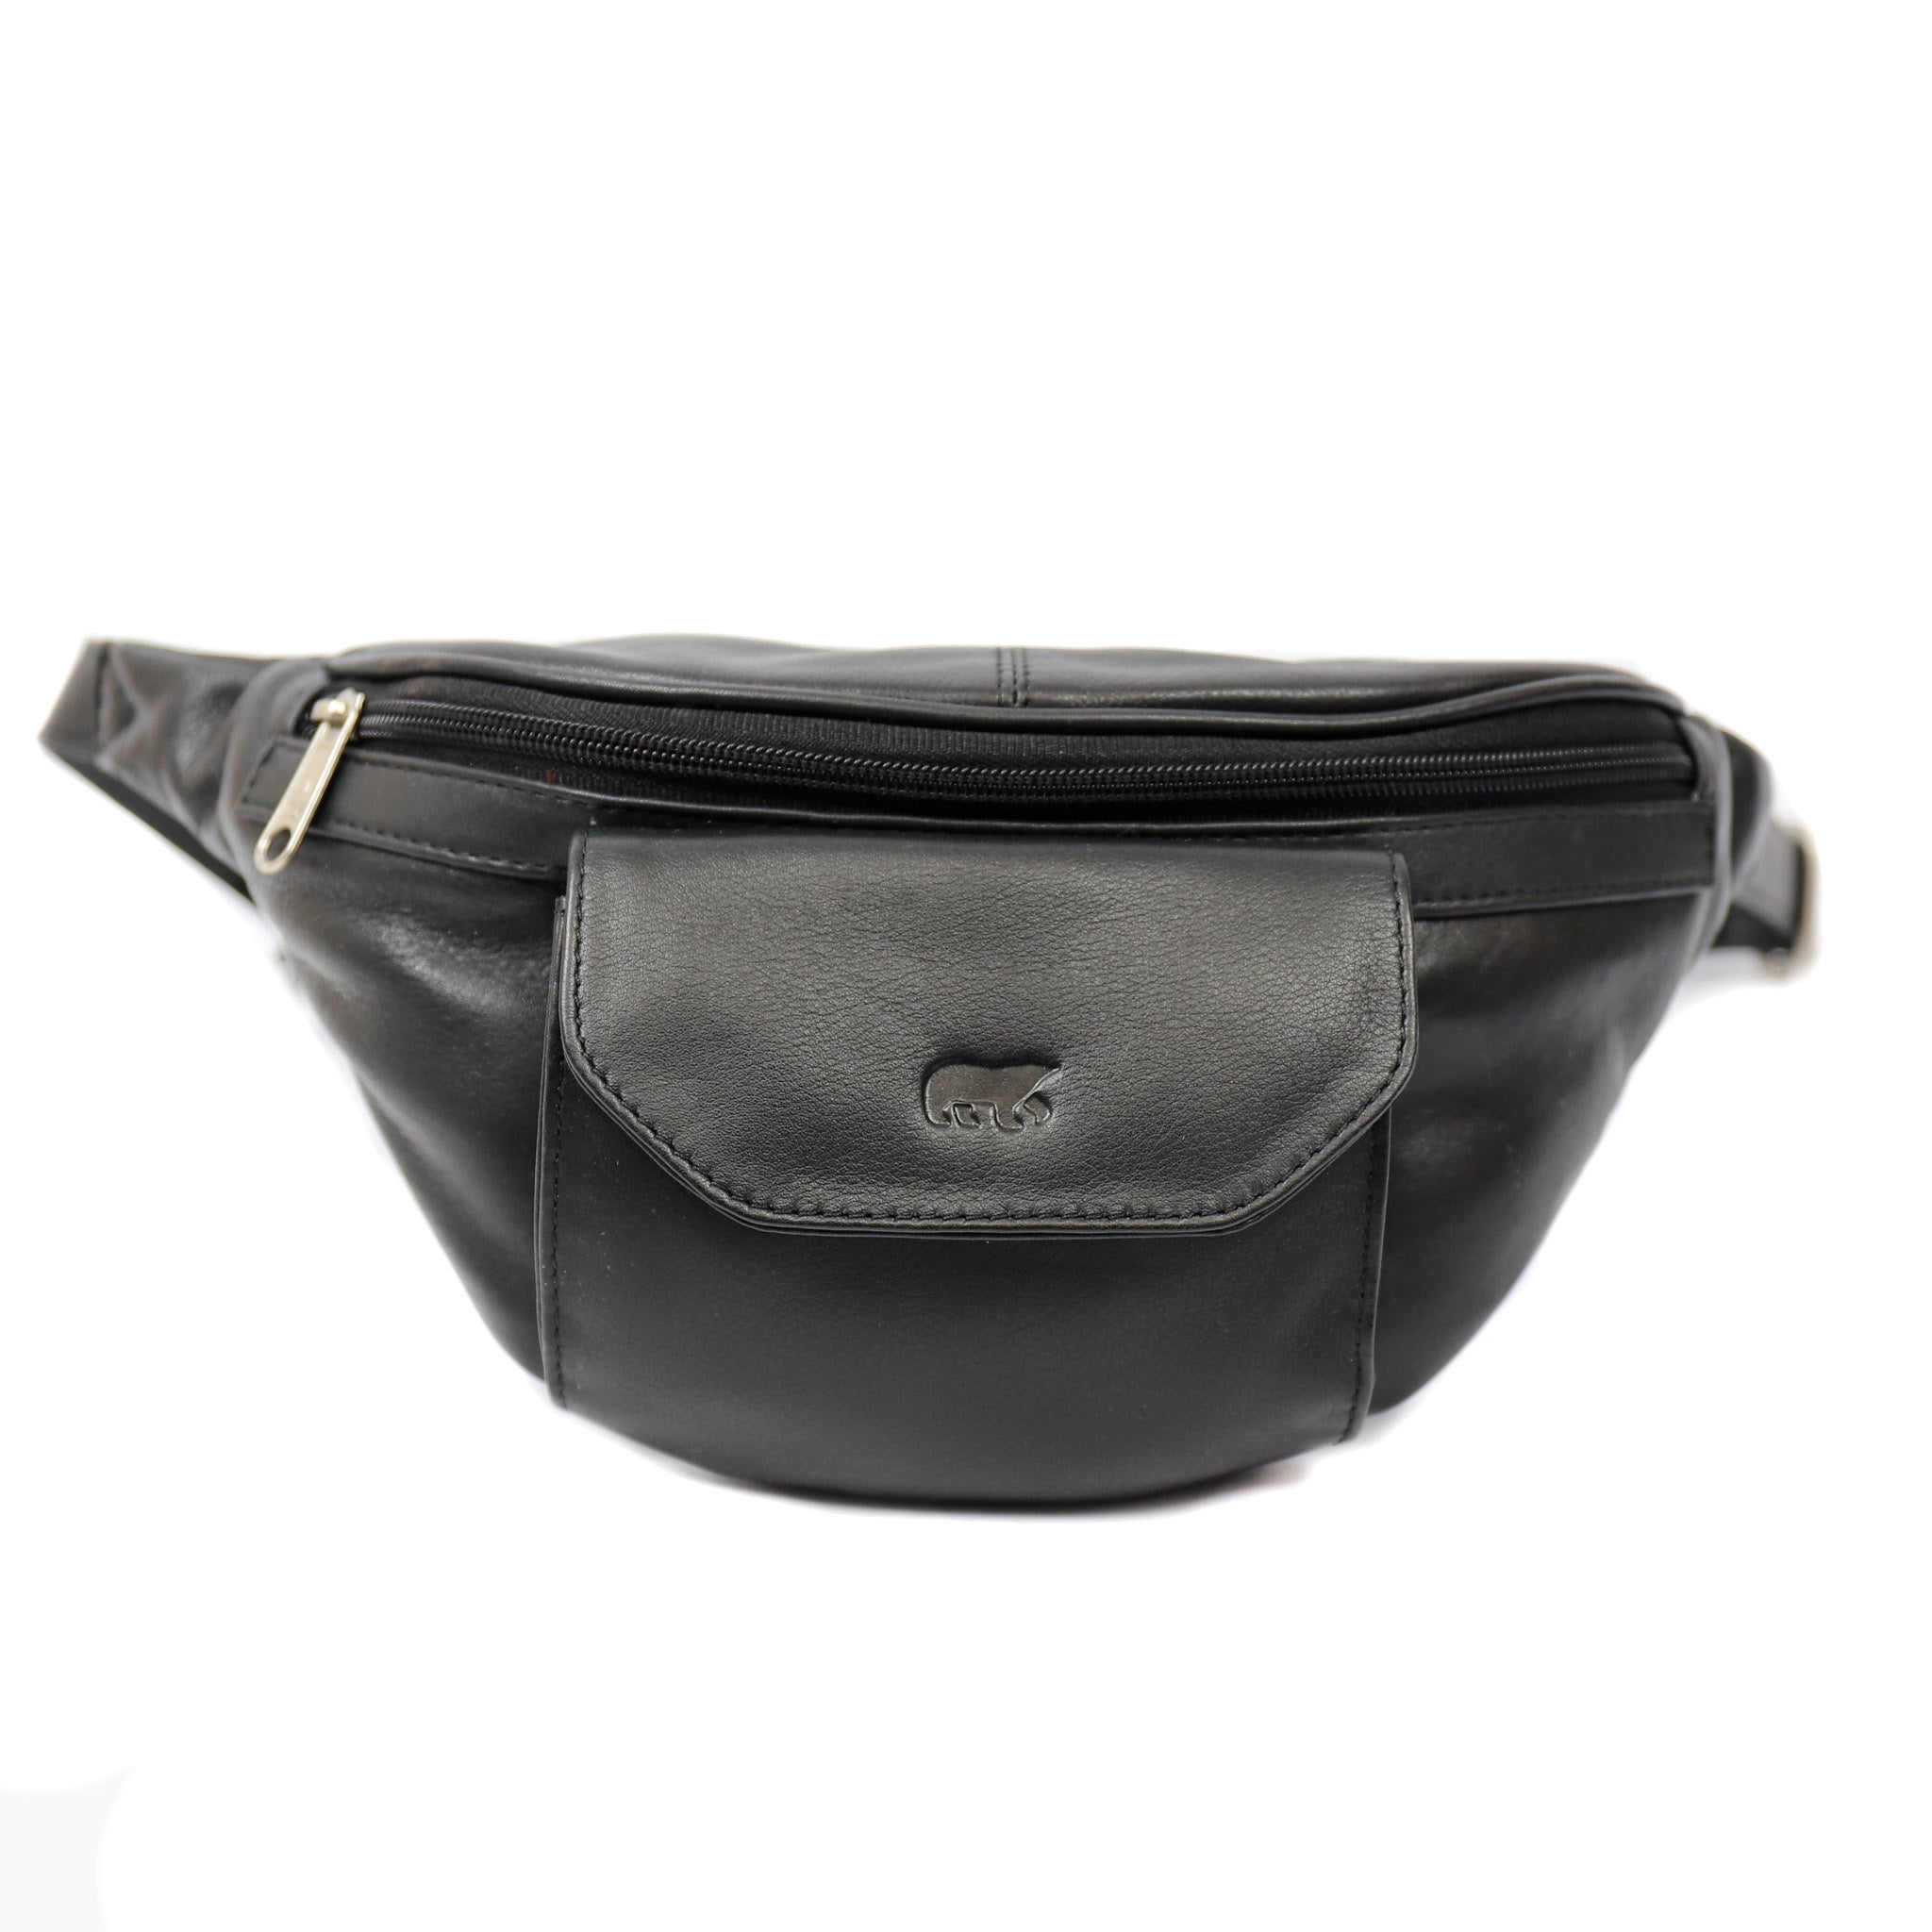 Belt bag 'Noa' black - B 5738